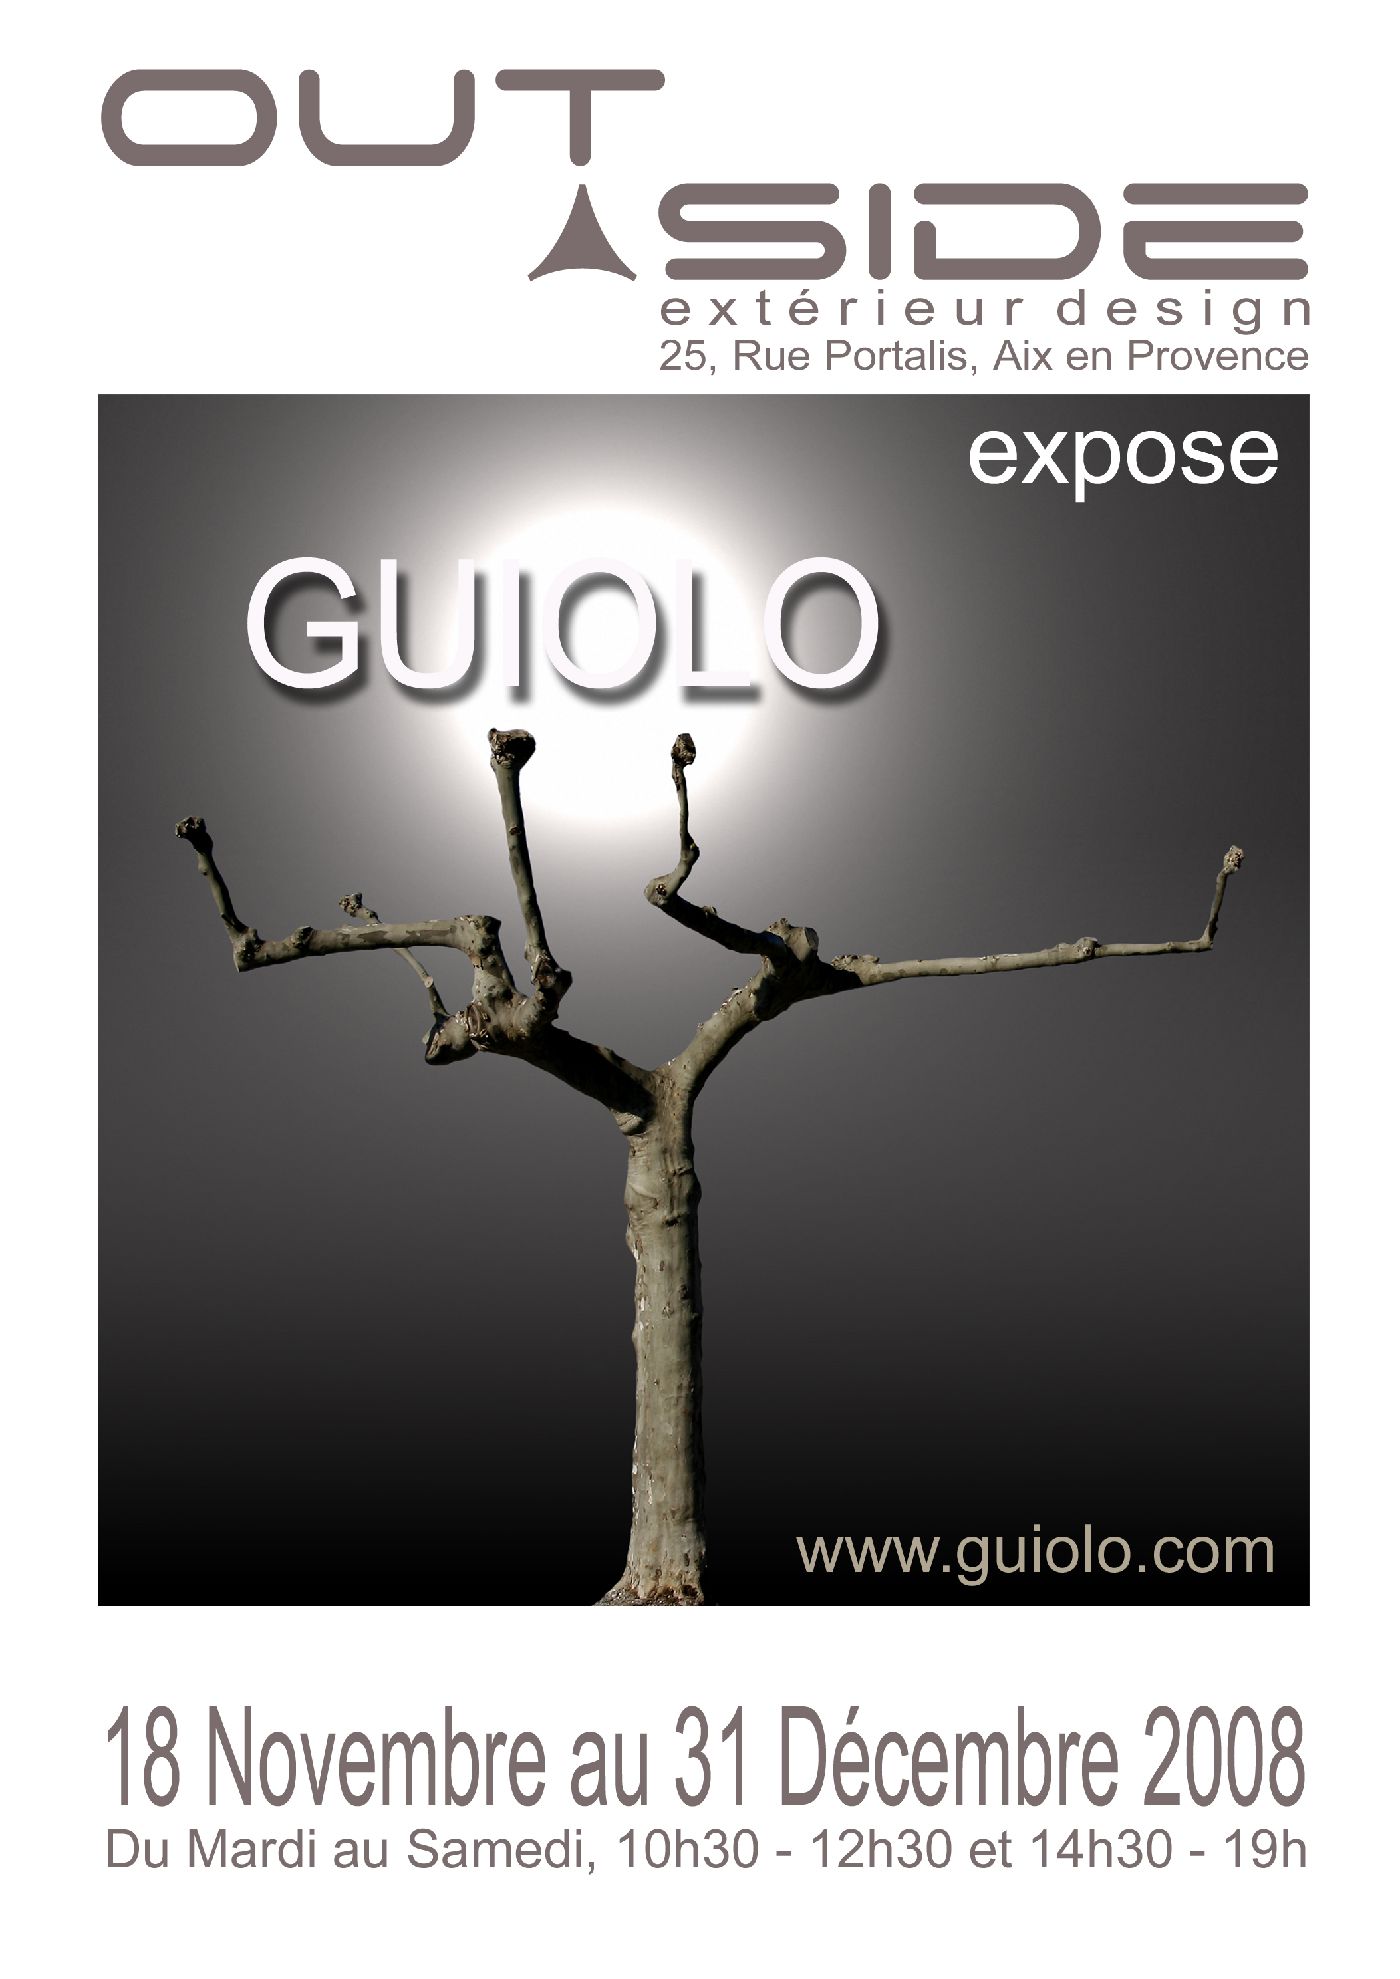 Exposition Outside Design Guiolo photographe à Aix en Provence